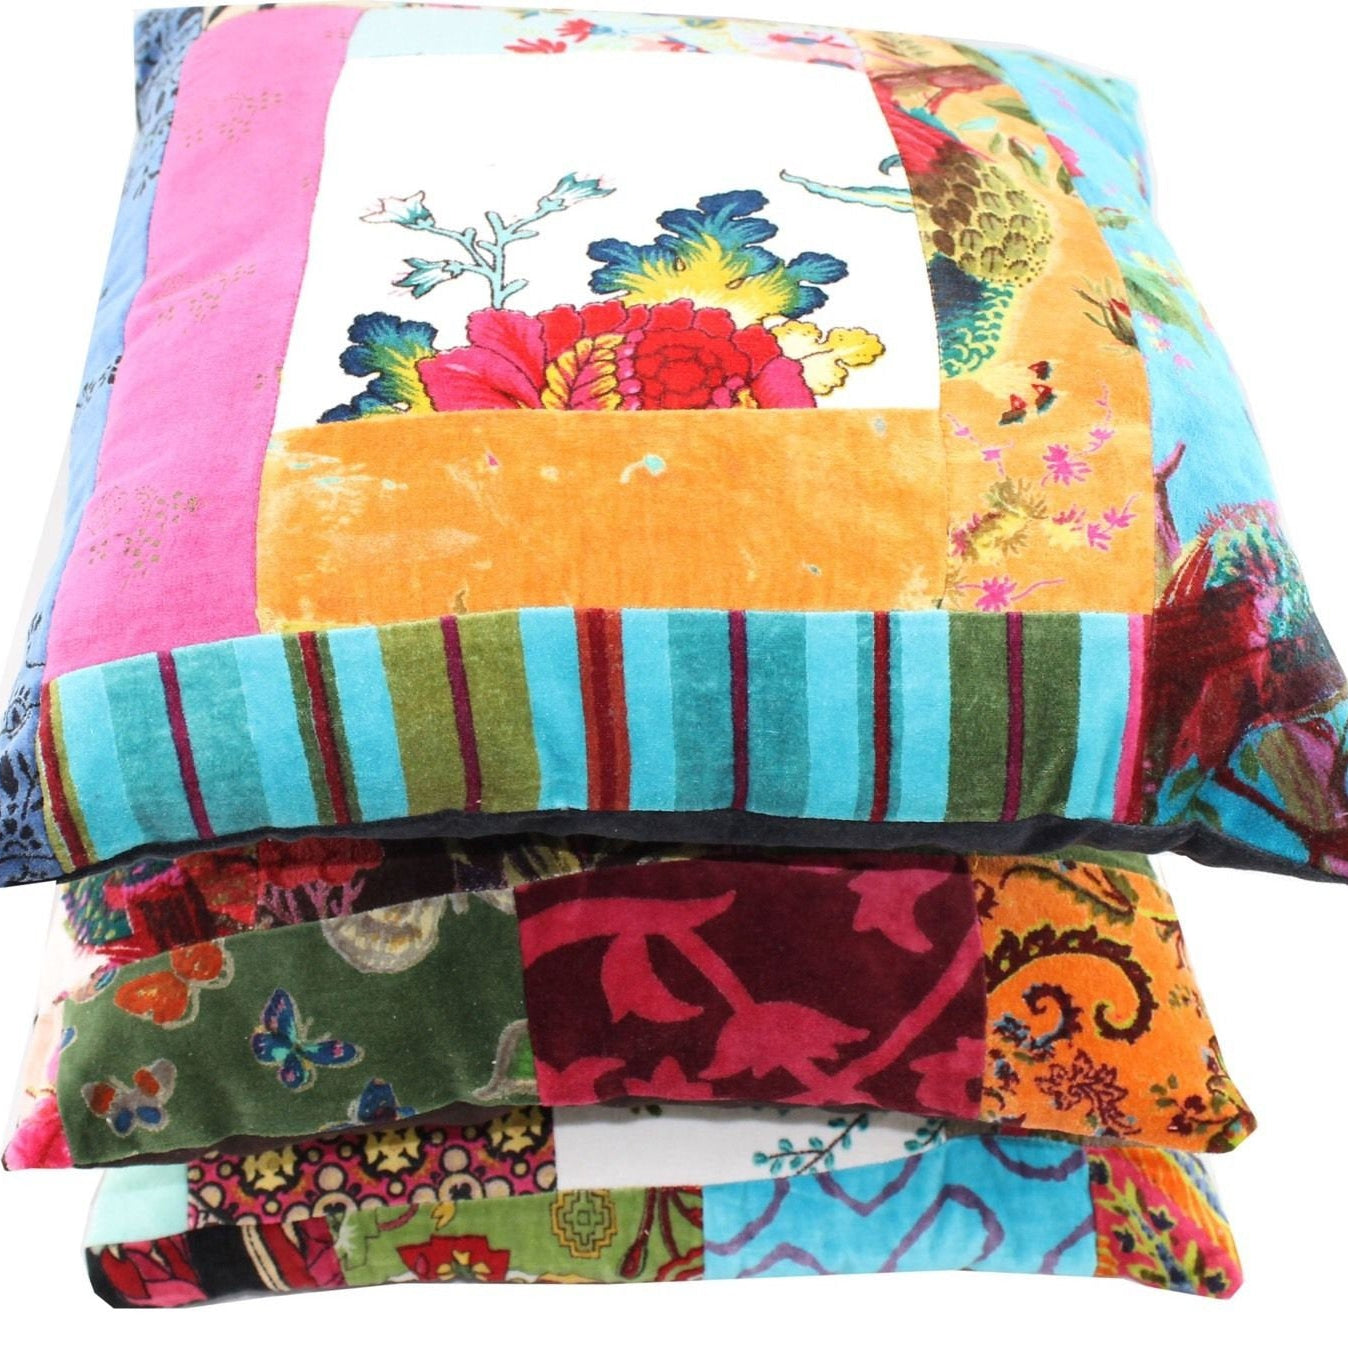 'Boho Florals' 100% Cotton Velvet Patchwork Cushion Cover